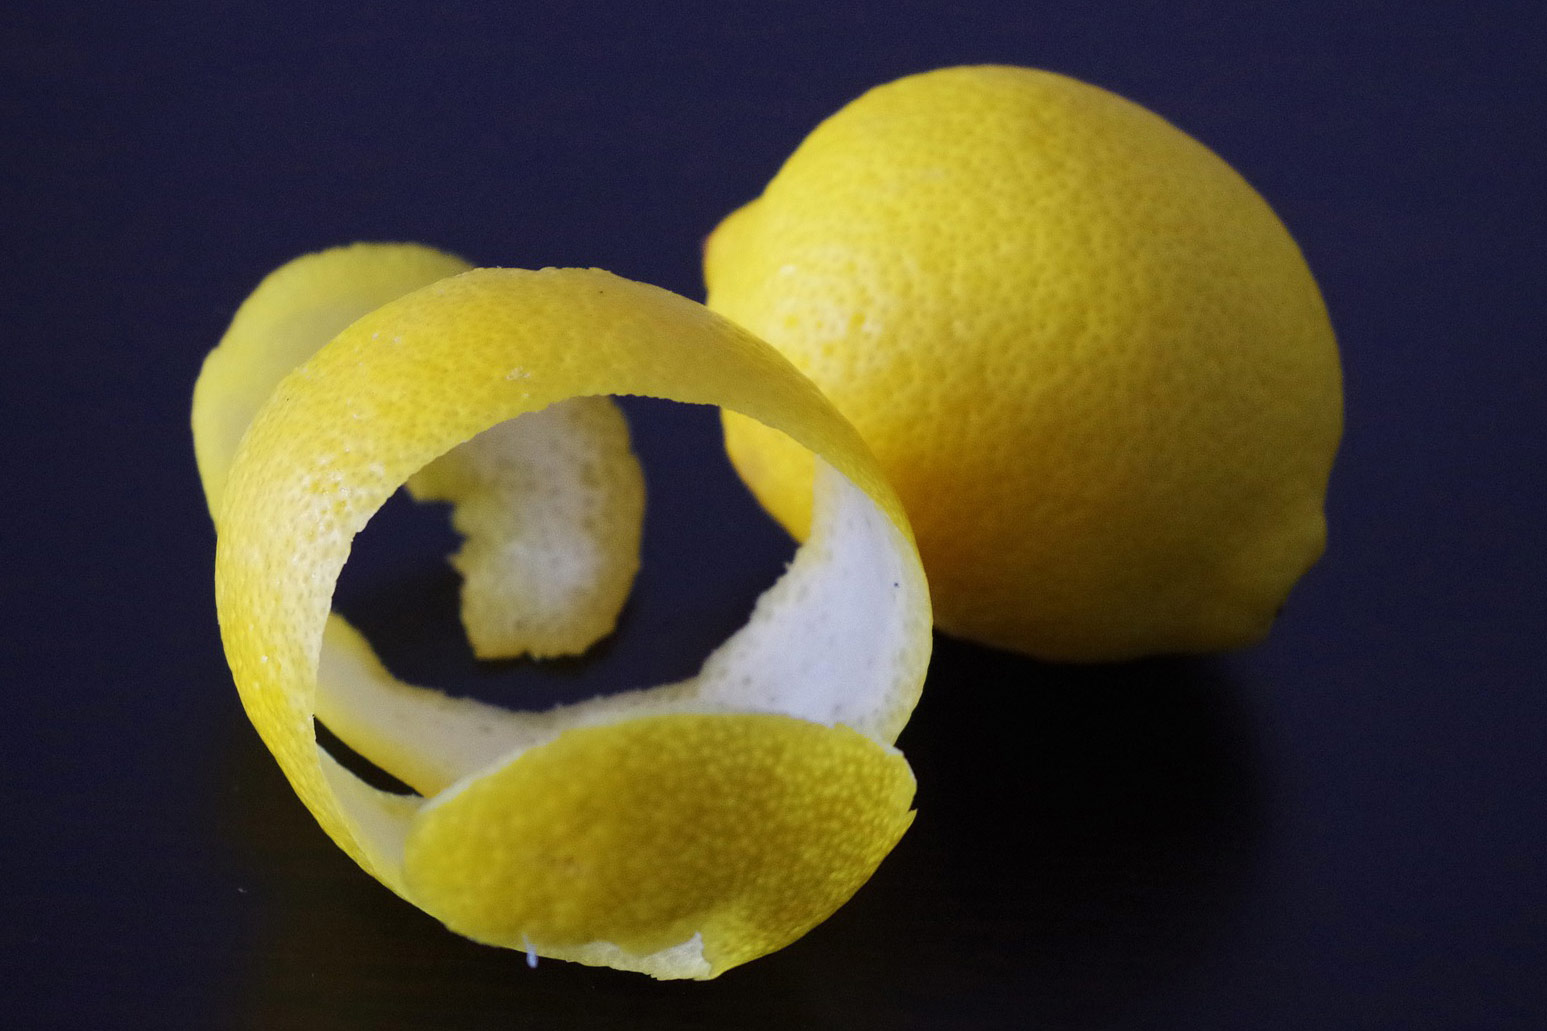 Fotografija prikazuje cijeli limun i koru oguljenu s limuna.